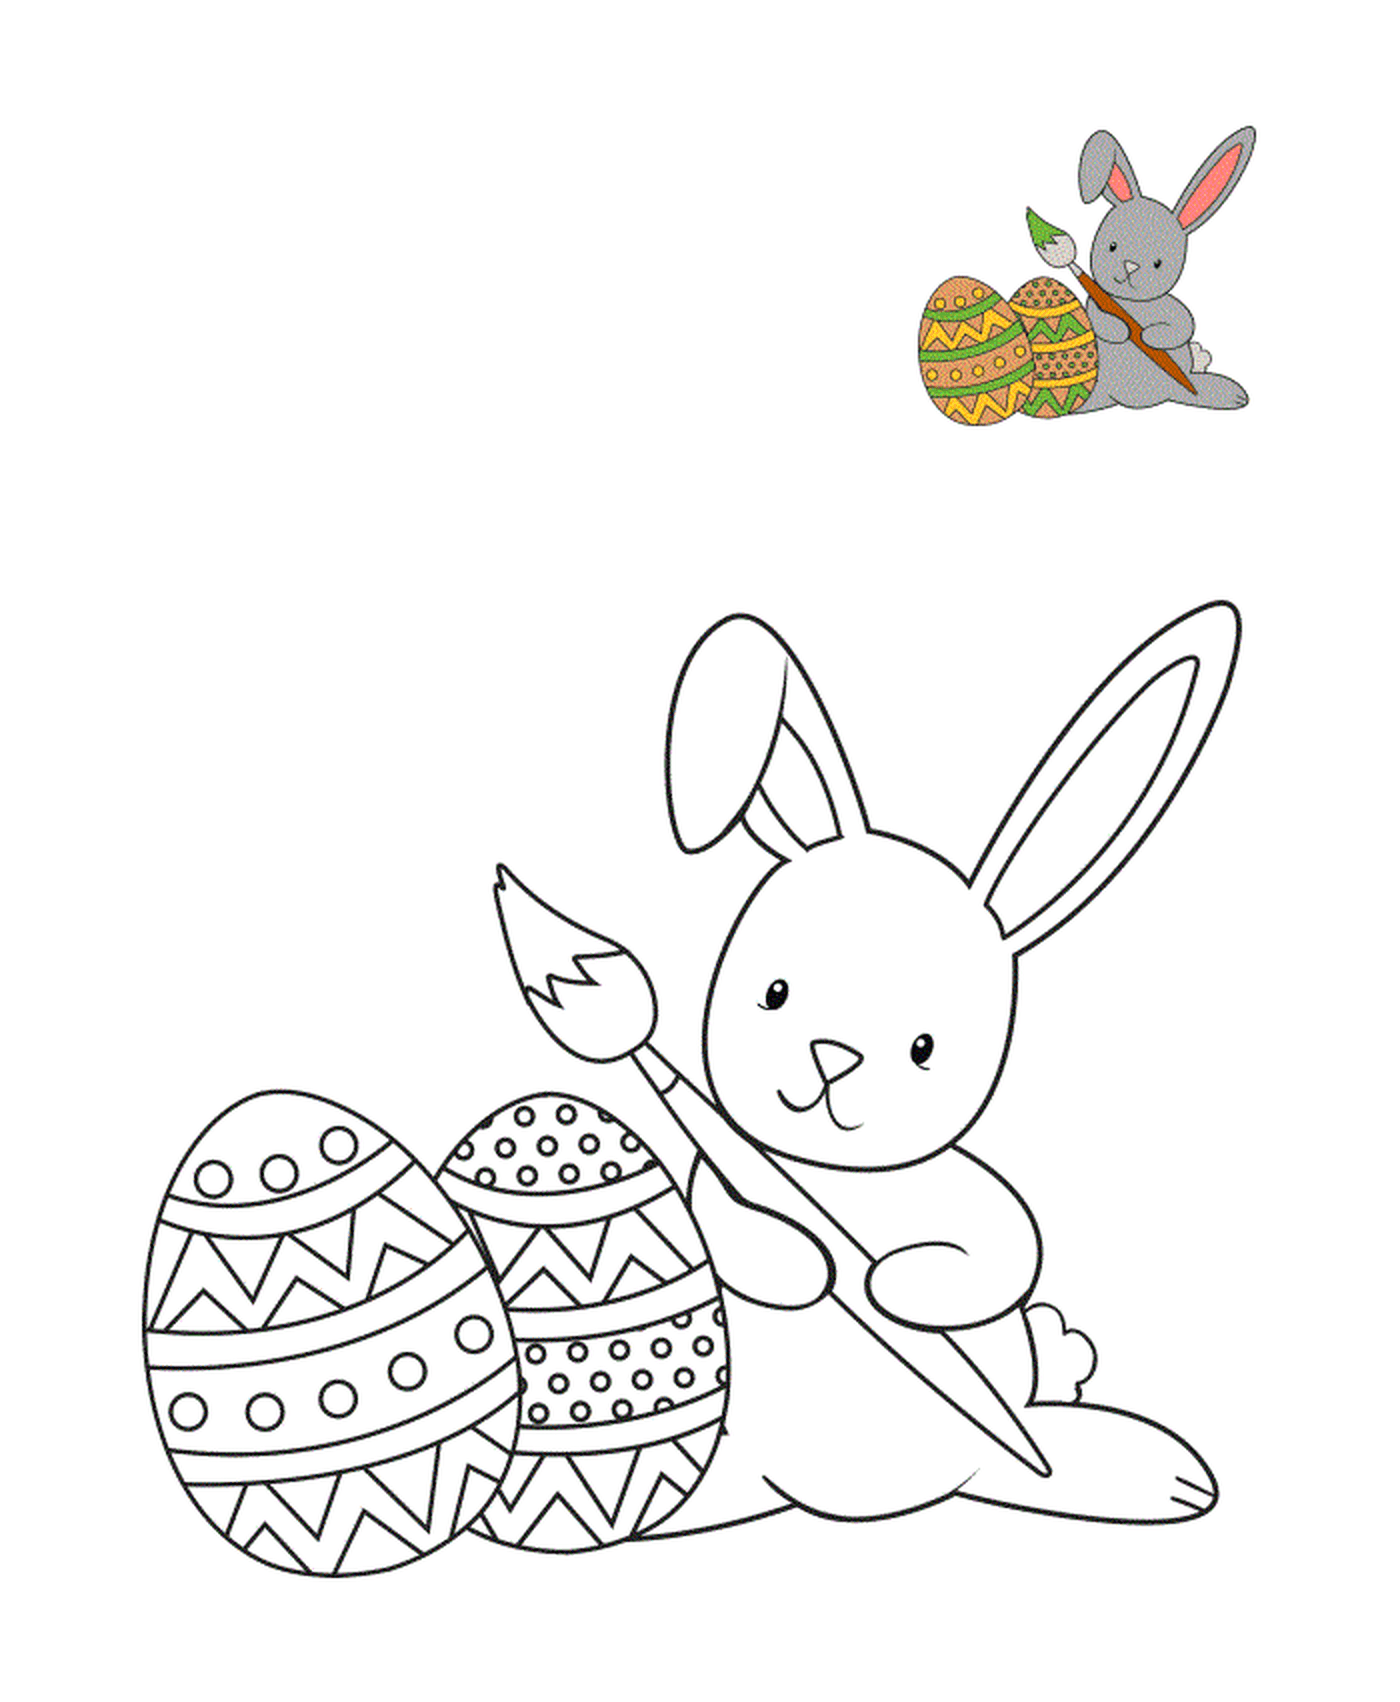  Rabbit painting Easter egg 